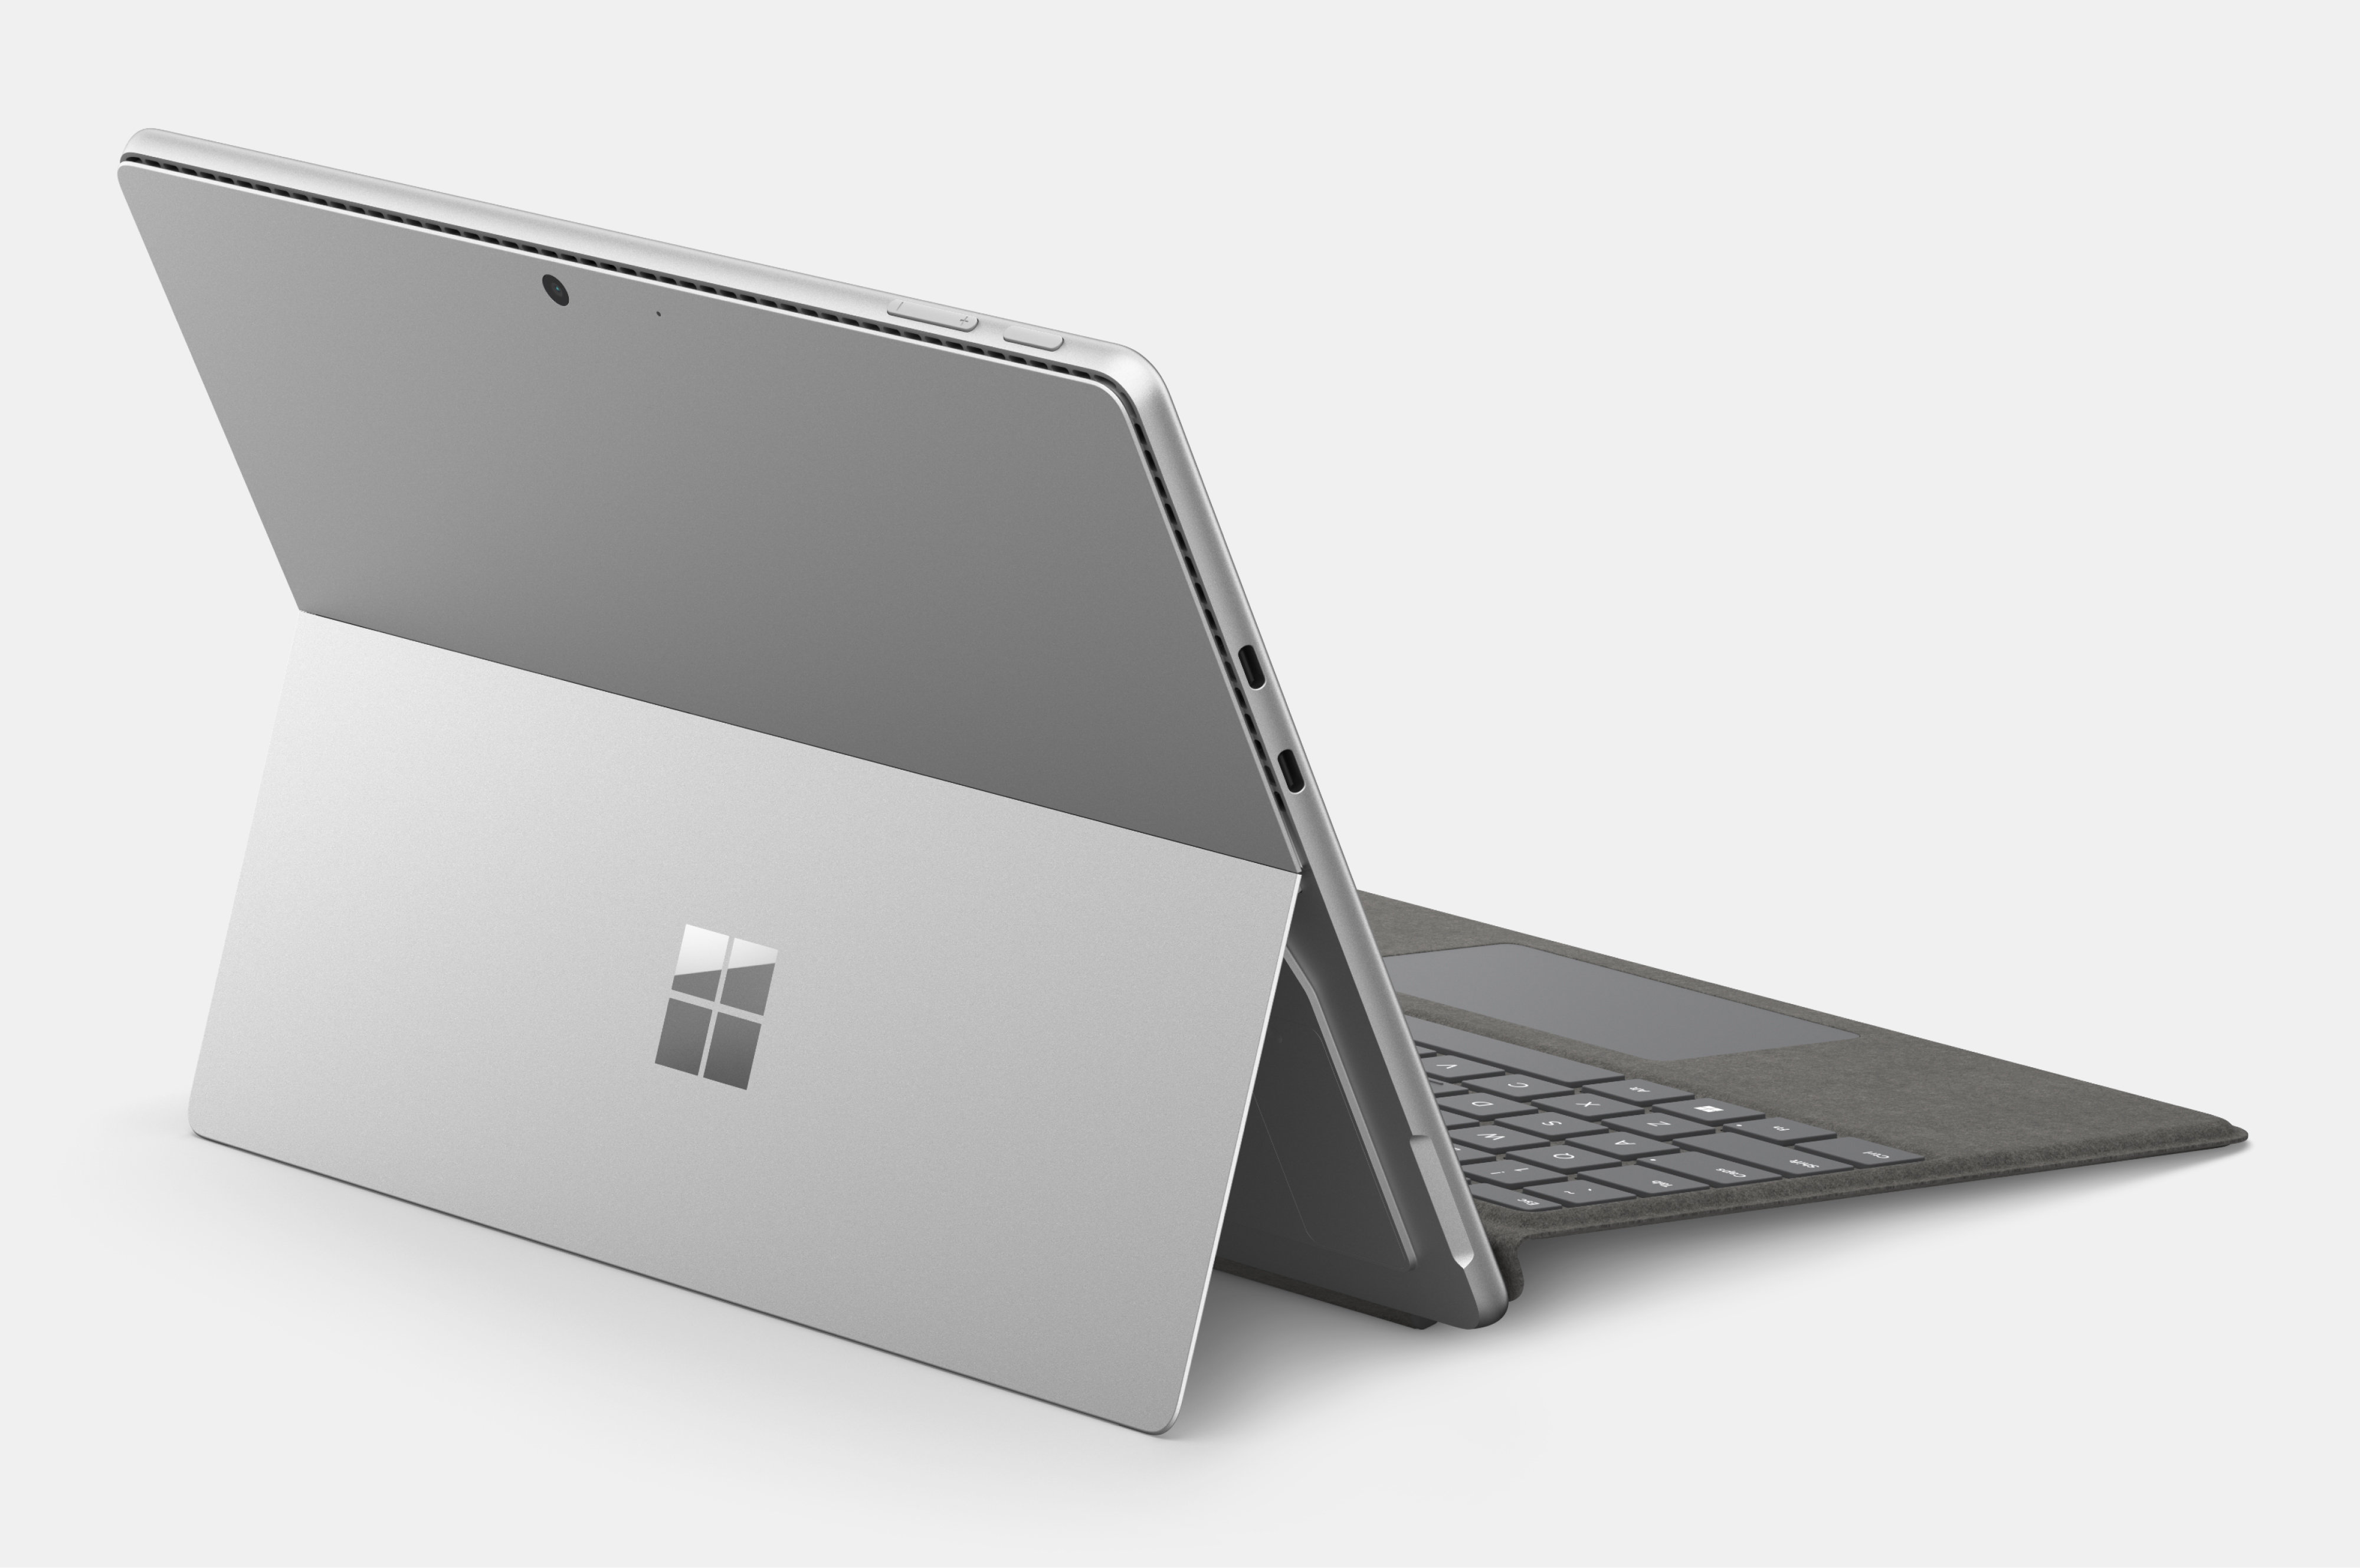 展示採用膝上型電腦模式且打開的 Surface Pro 10，讓 Surface 整合式支架亮相